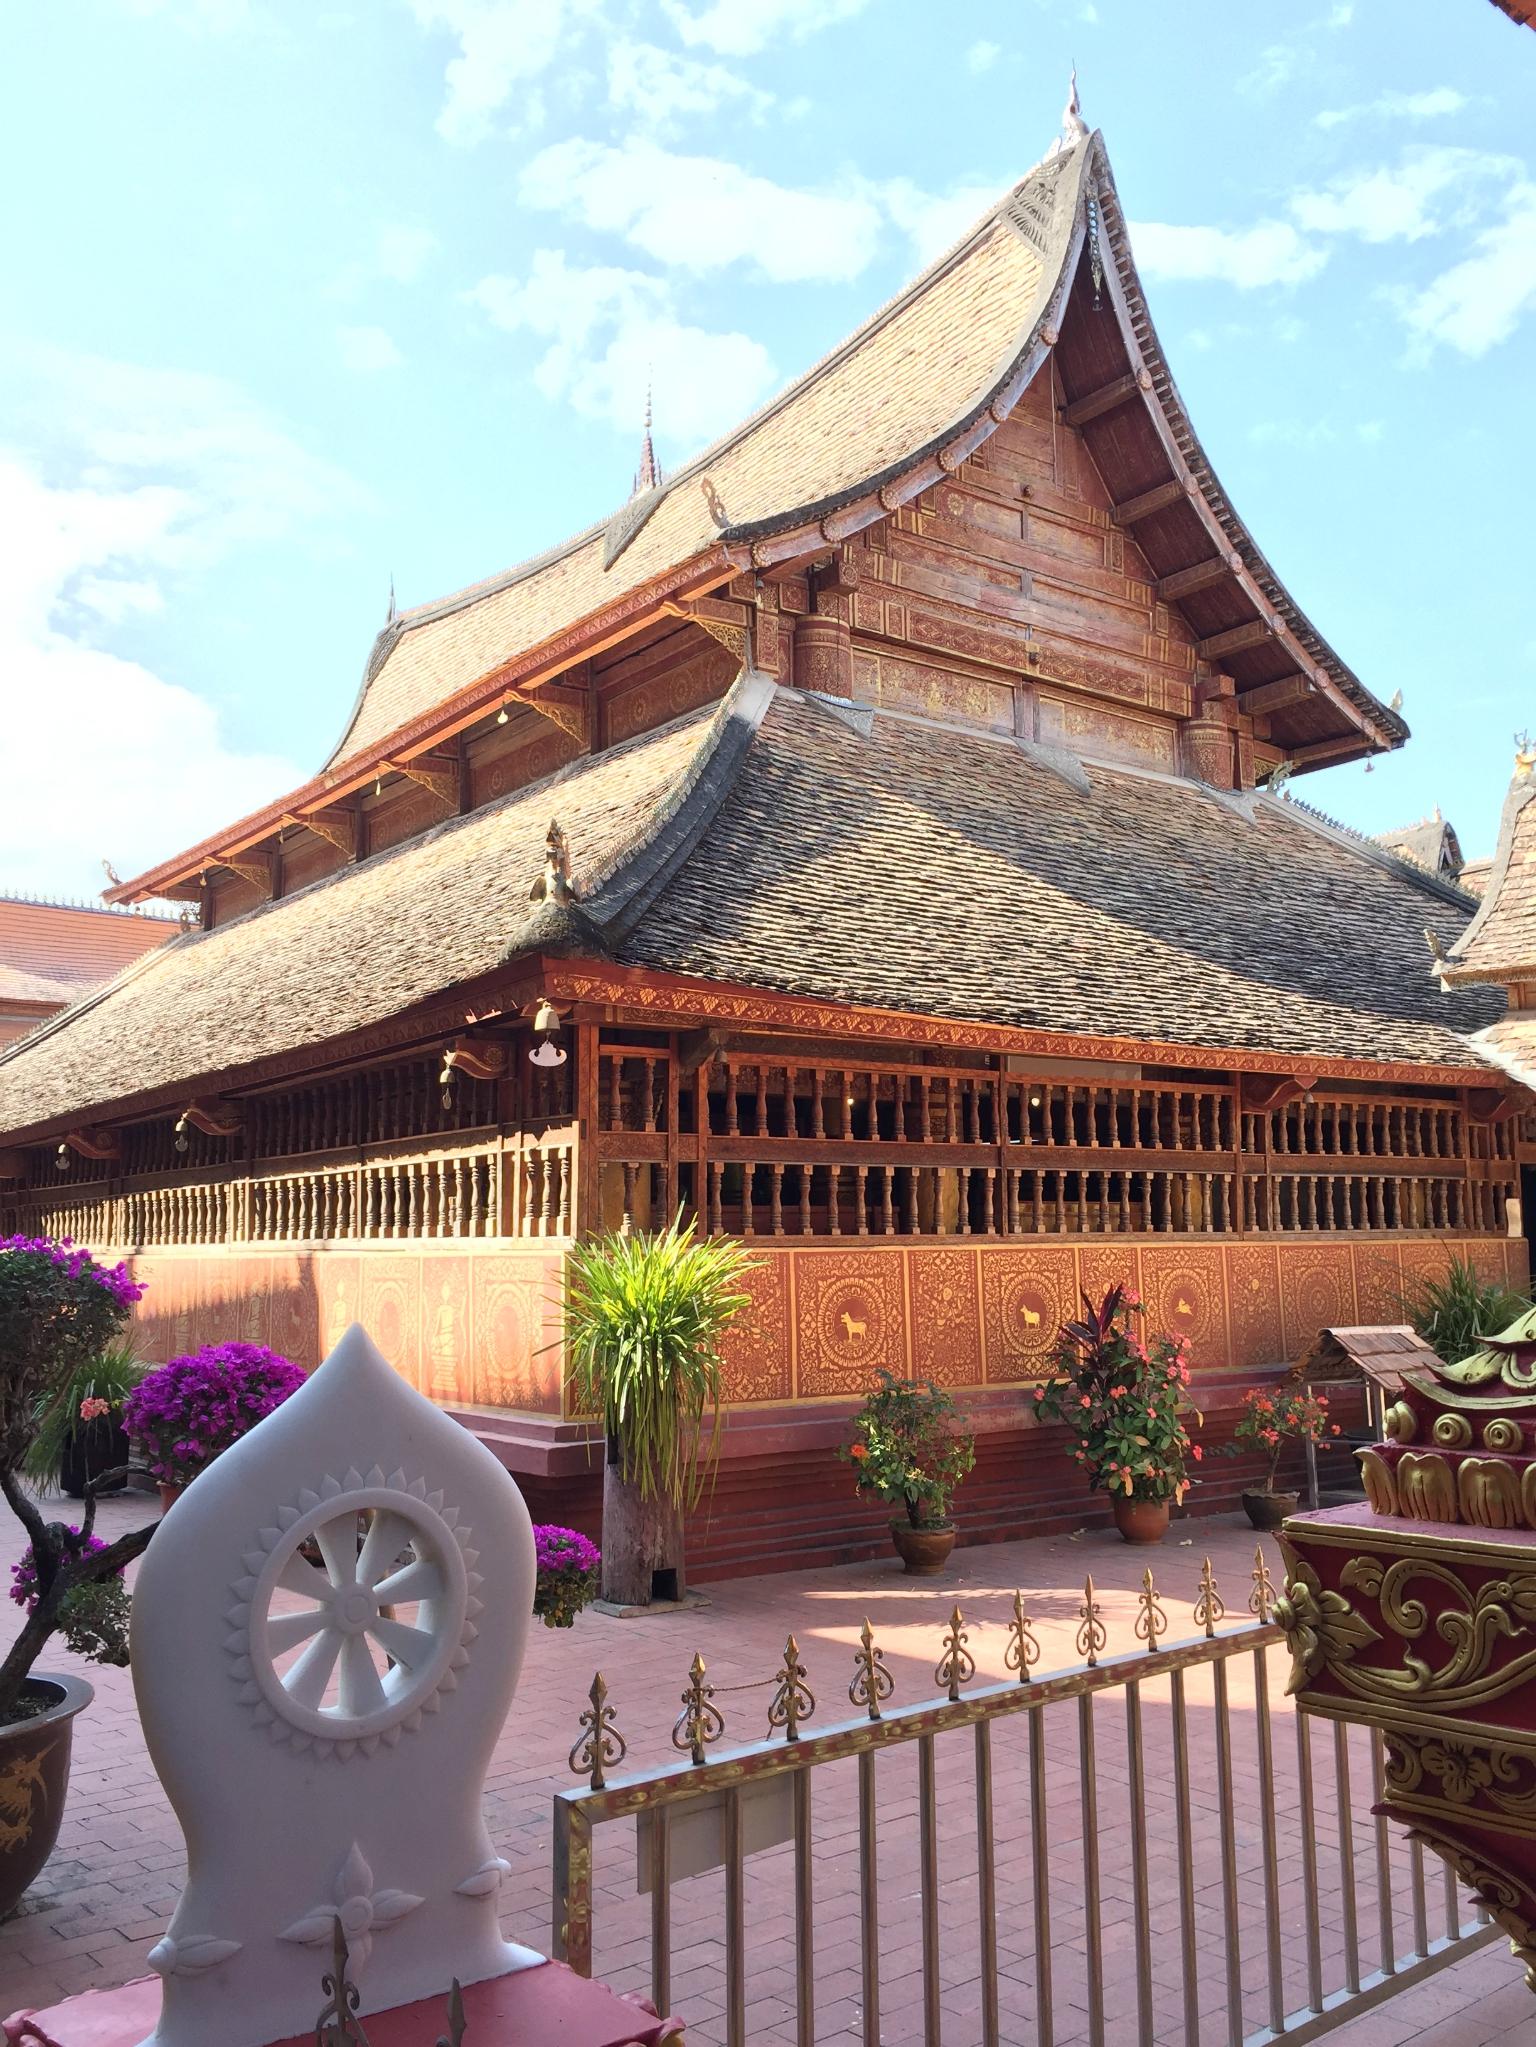 走进傣族园,必去曼春满佛寺这是一座历史悠久的古寺庙,国家重点文物